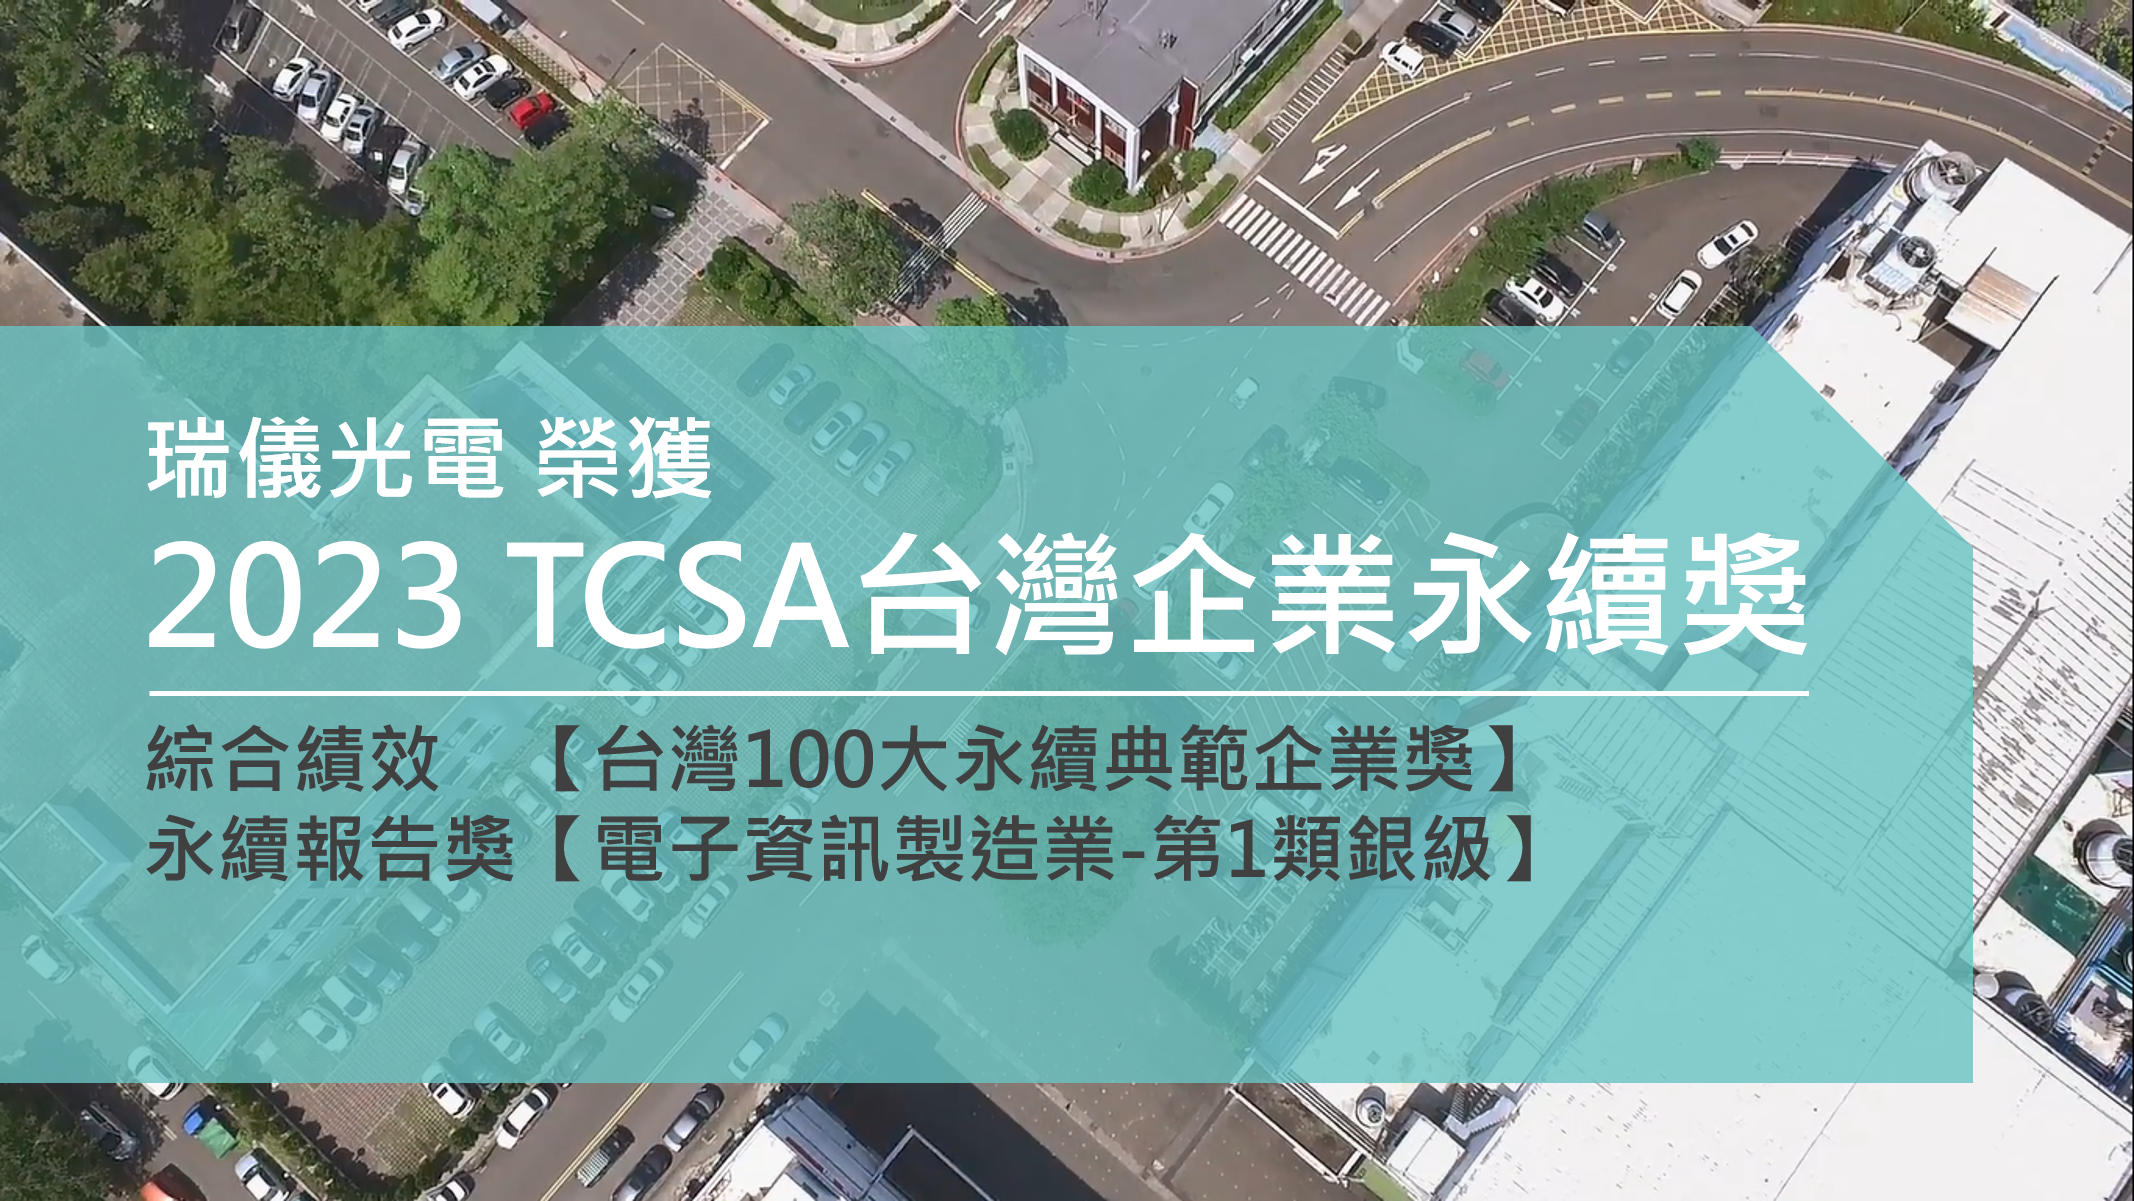 2023年延續獲頒TCSA榮耀